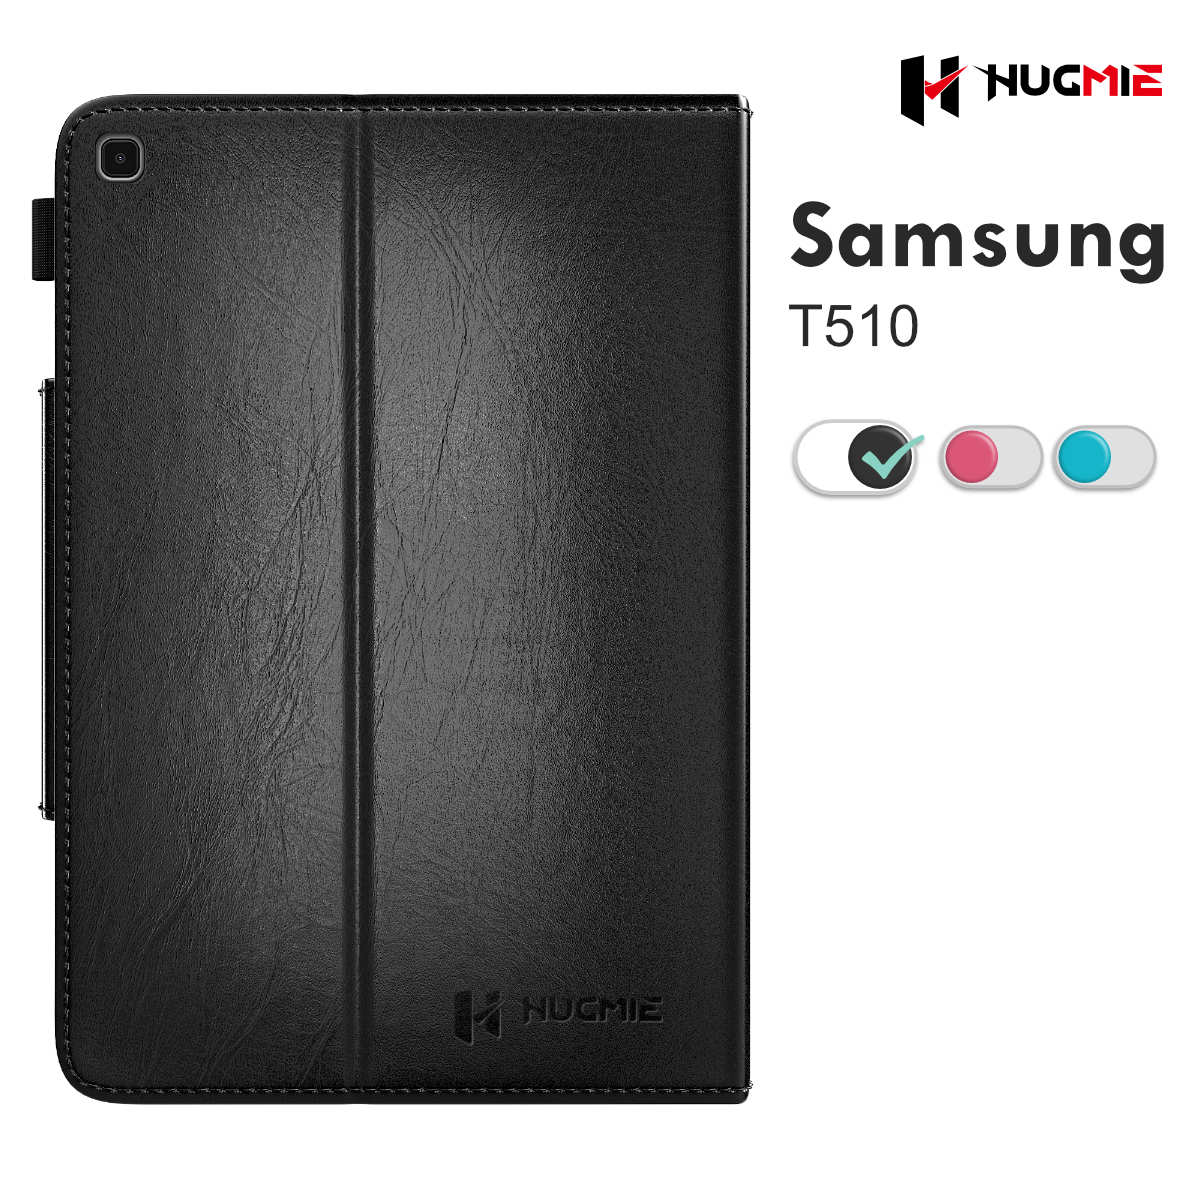 Samsung Galaxy Tab T510 Leather Folio Case | Hugmie